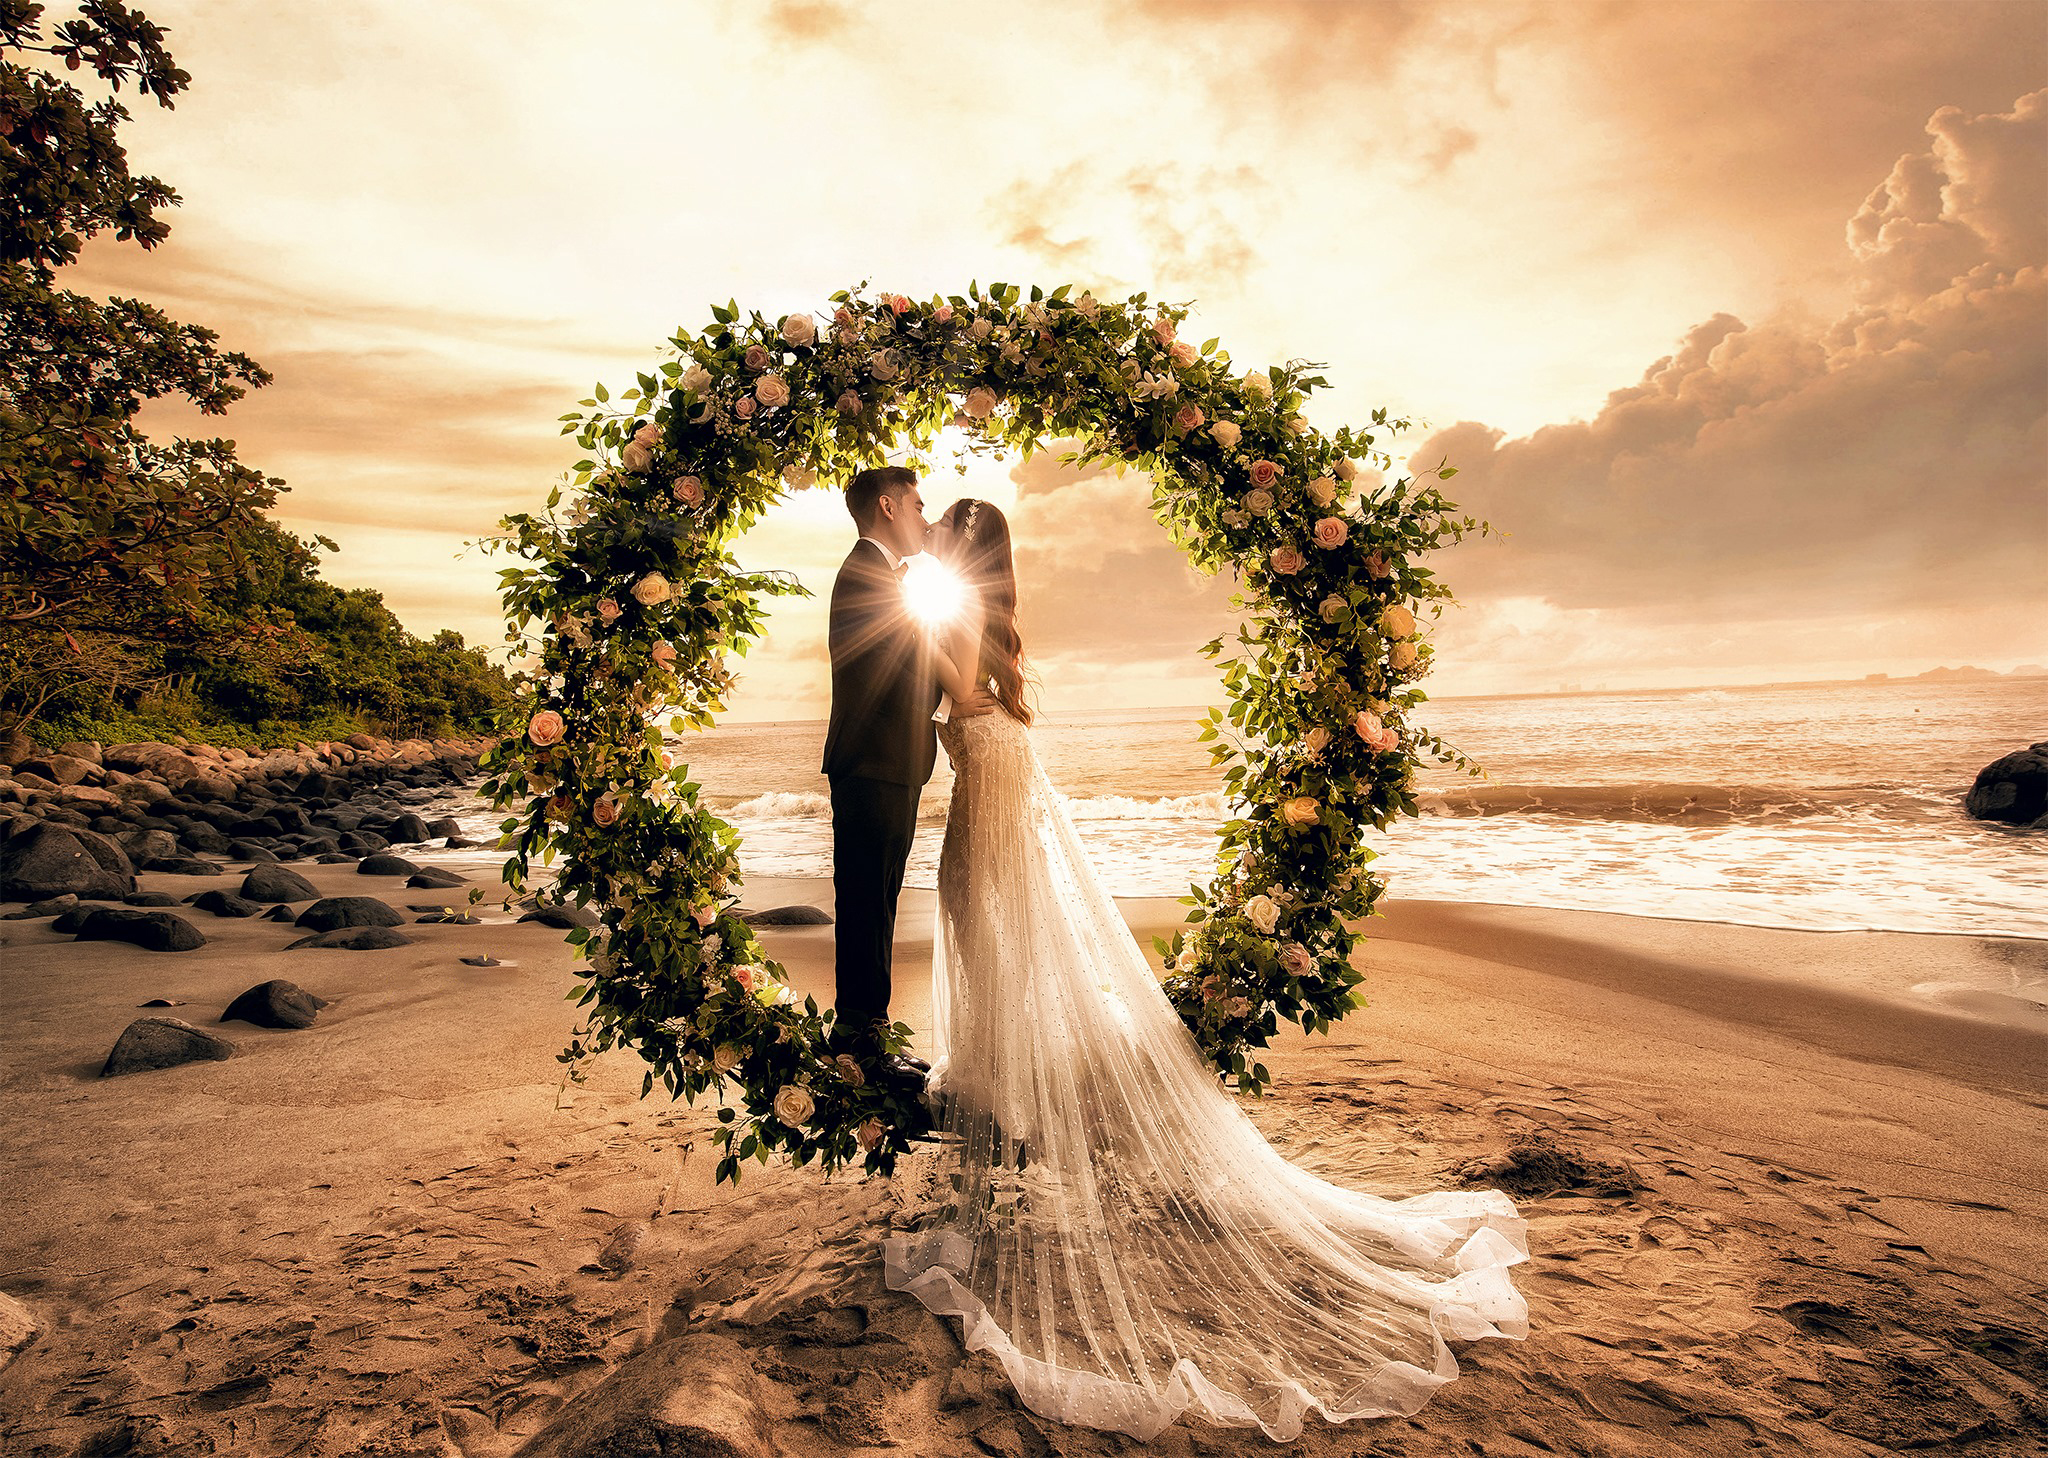 Concept chụp ảnh cưới ở biển